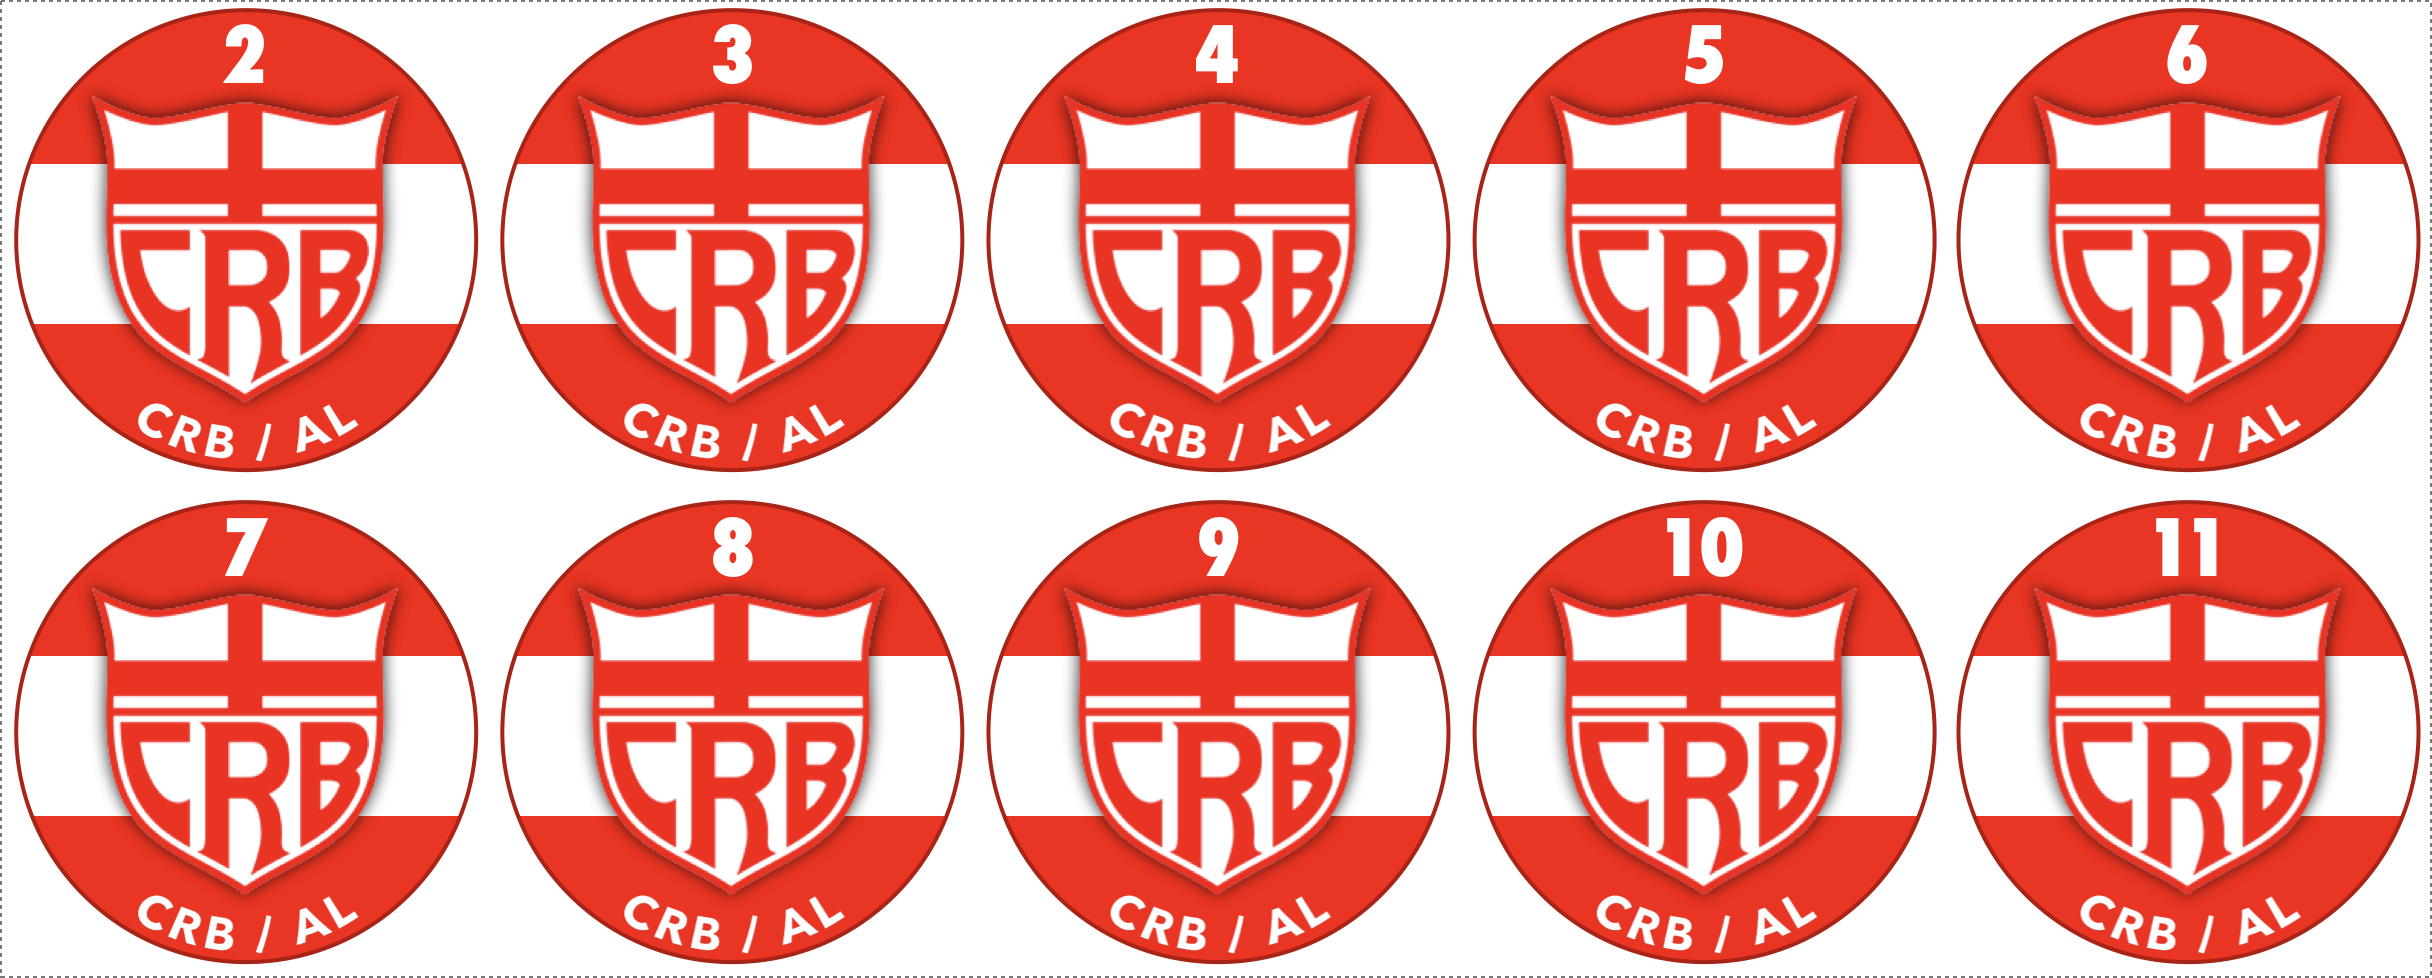 ARCB - Associação de Futebol de Botão